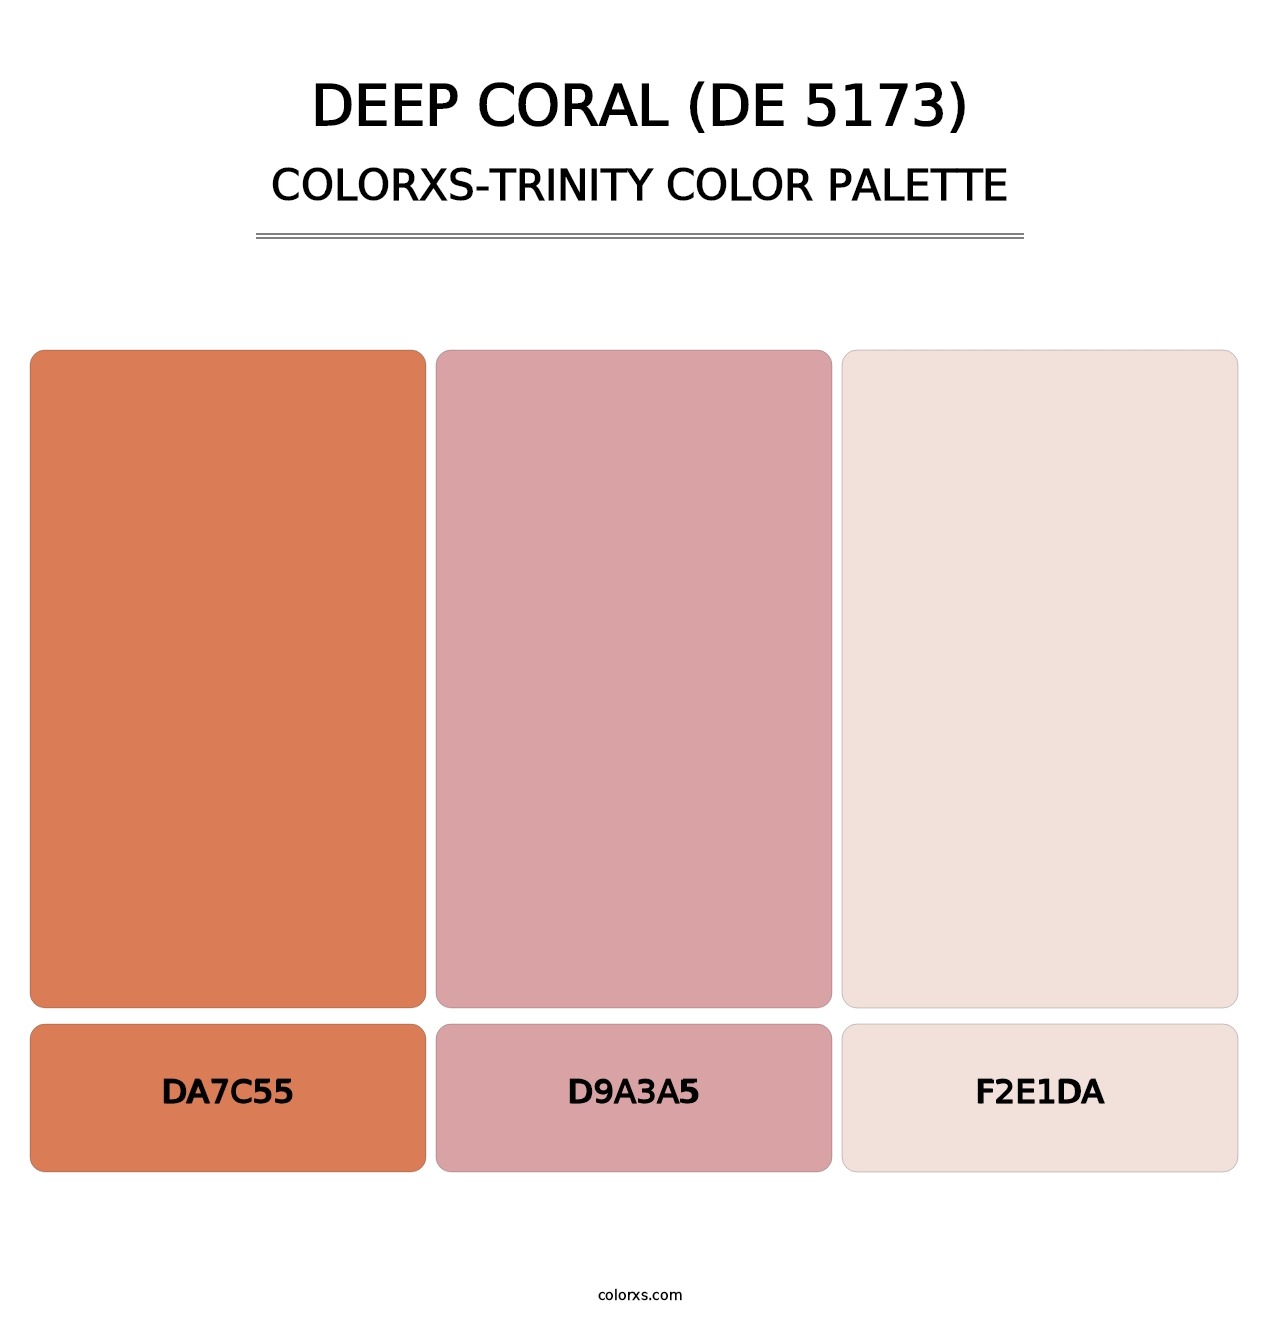 Deep Coral (DE 5173) - Colorxs Trinity Palette